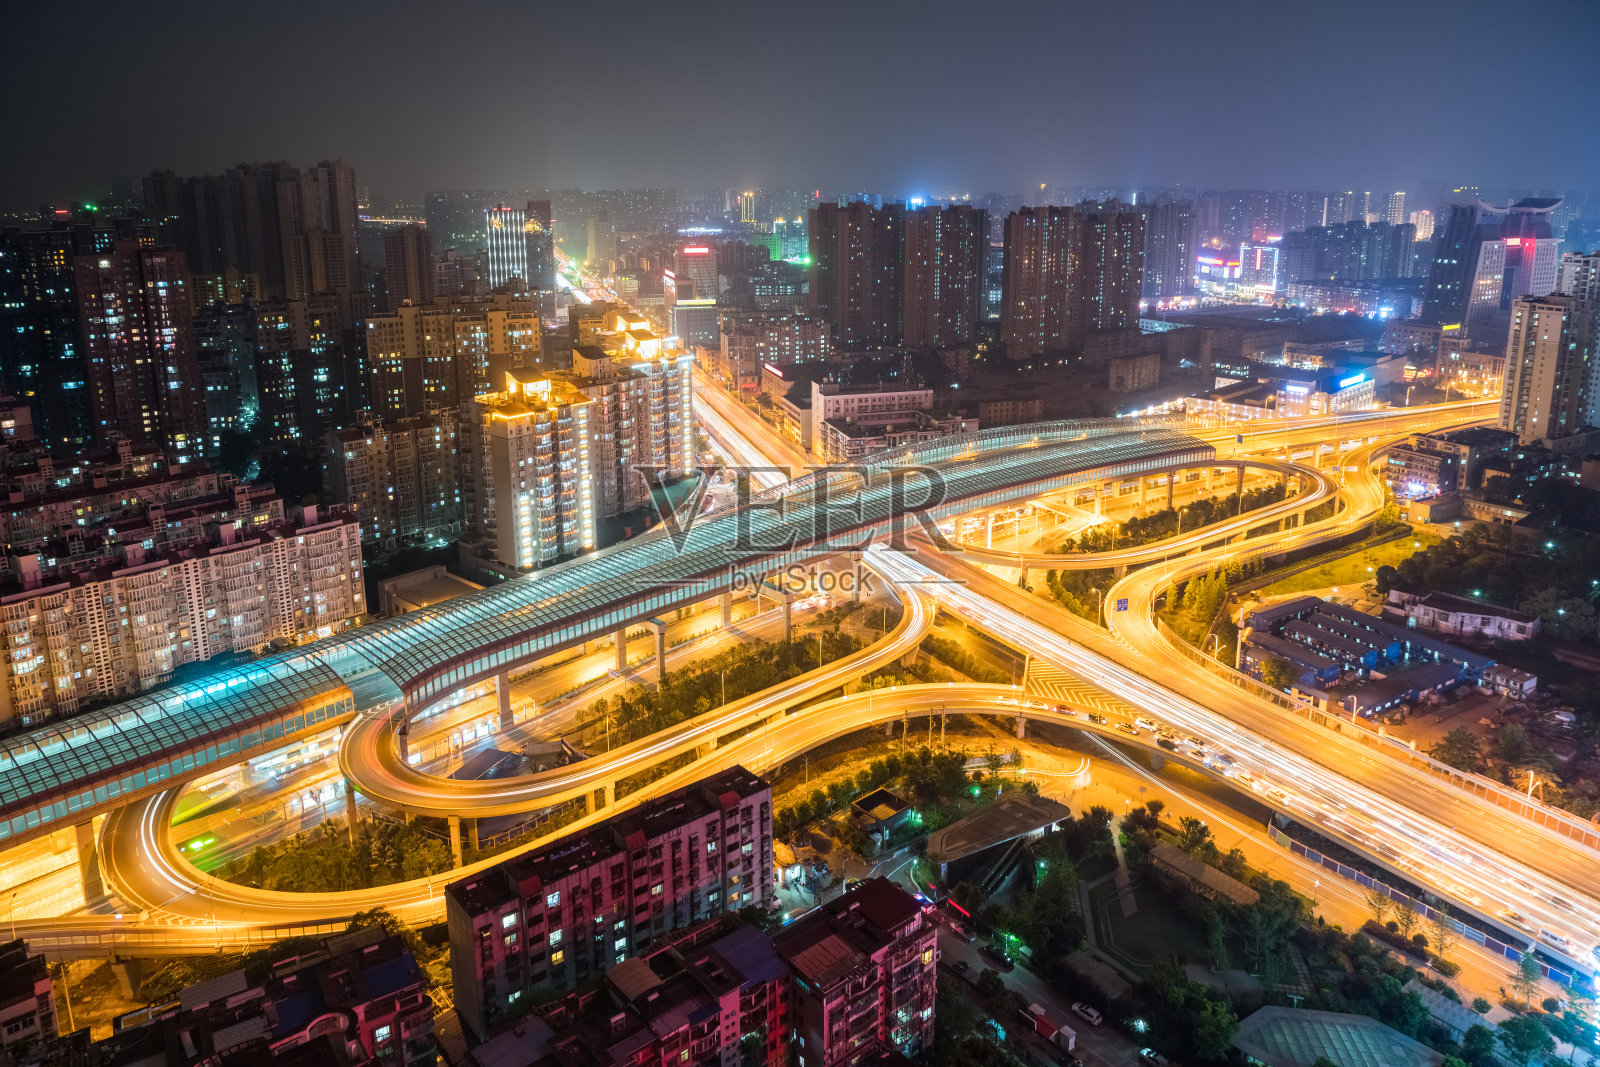 武汉立交桥夜景照片摄影图片